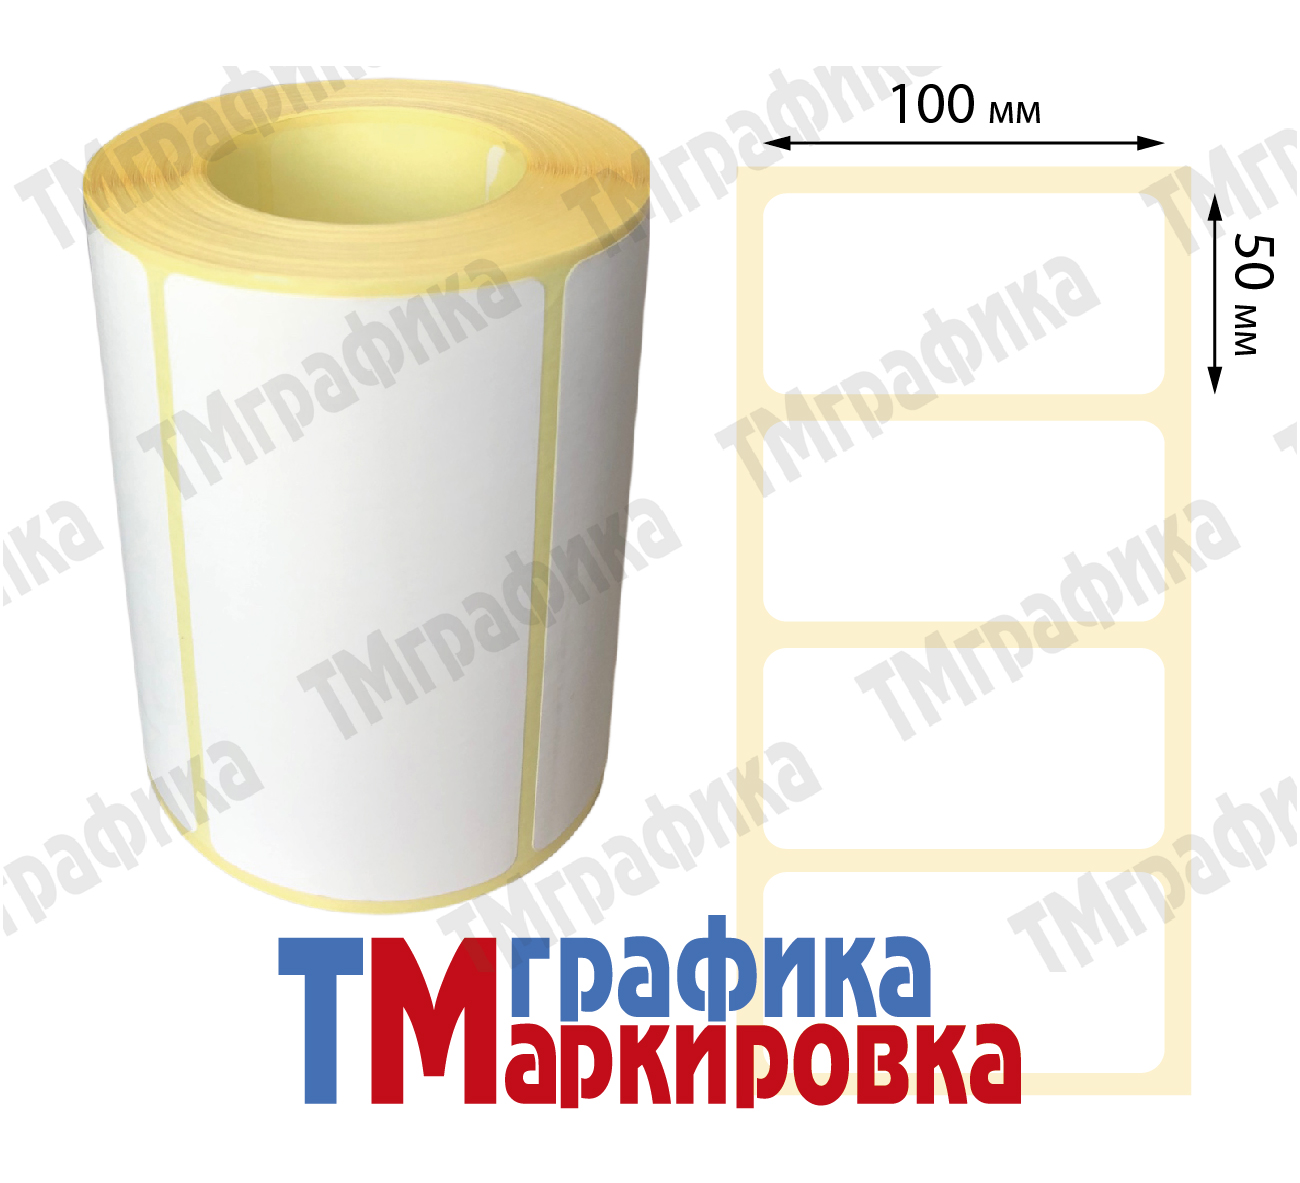 100х50 мм 500 шт. полипропиленовые Термотрансферные этикетки - 537.03 руб.